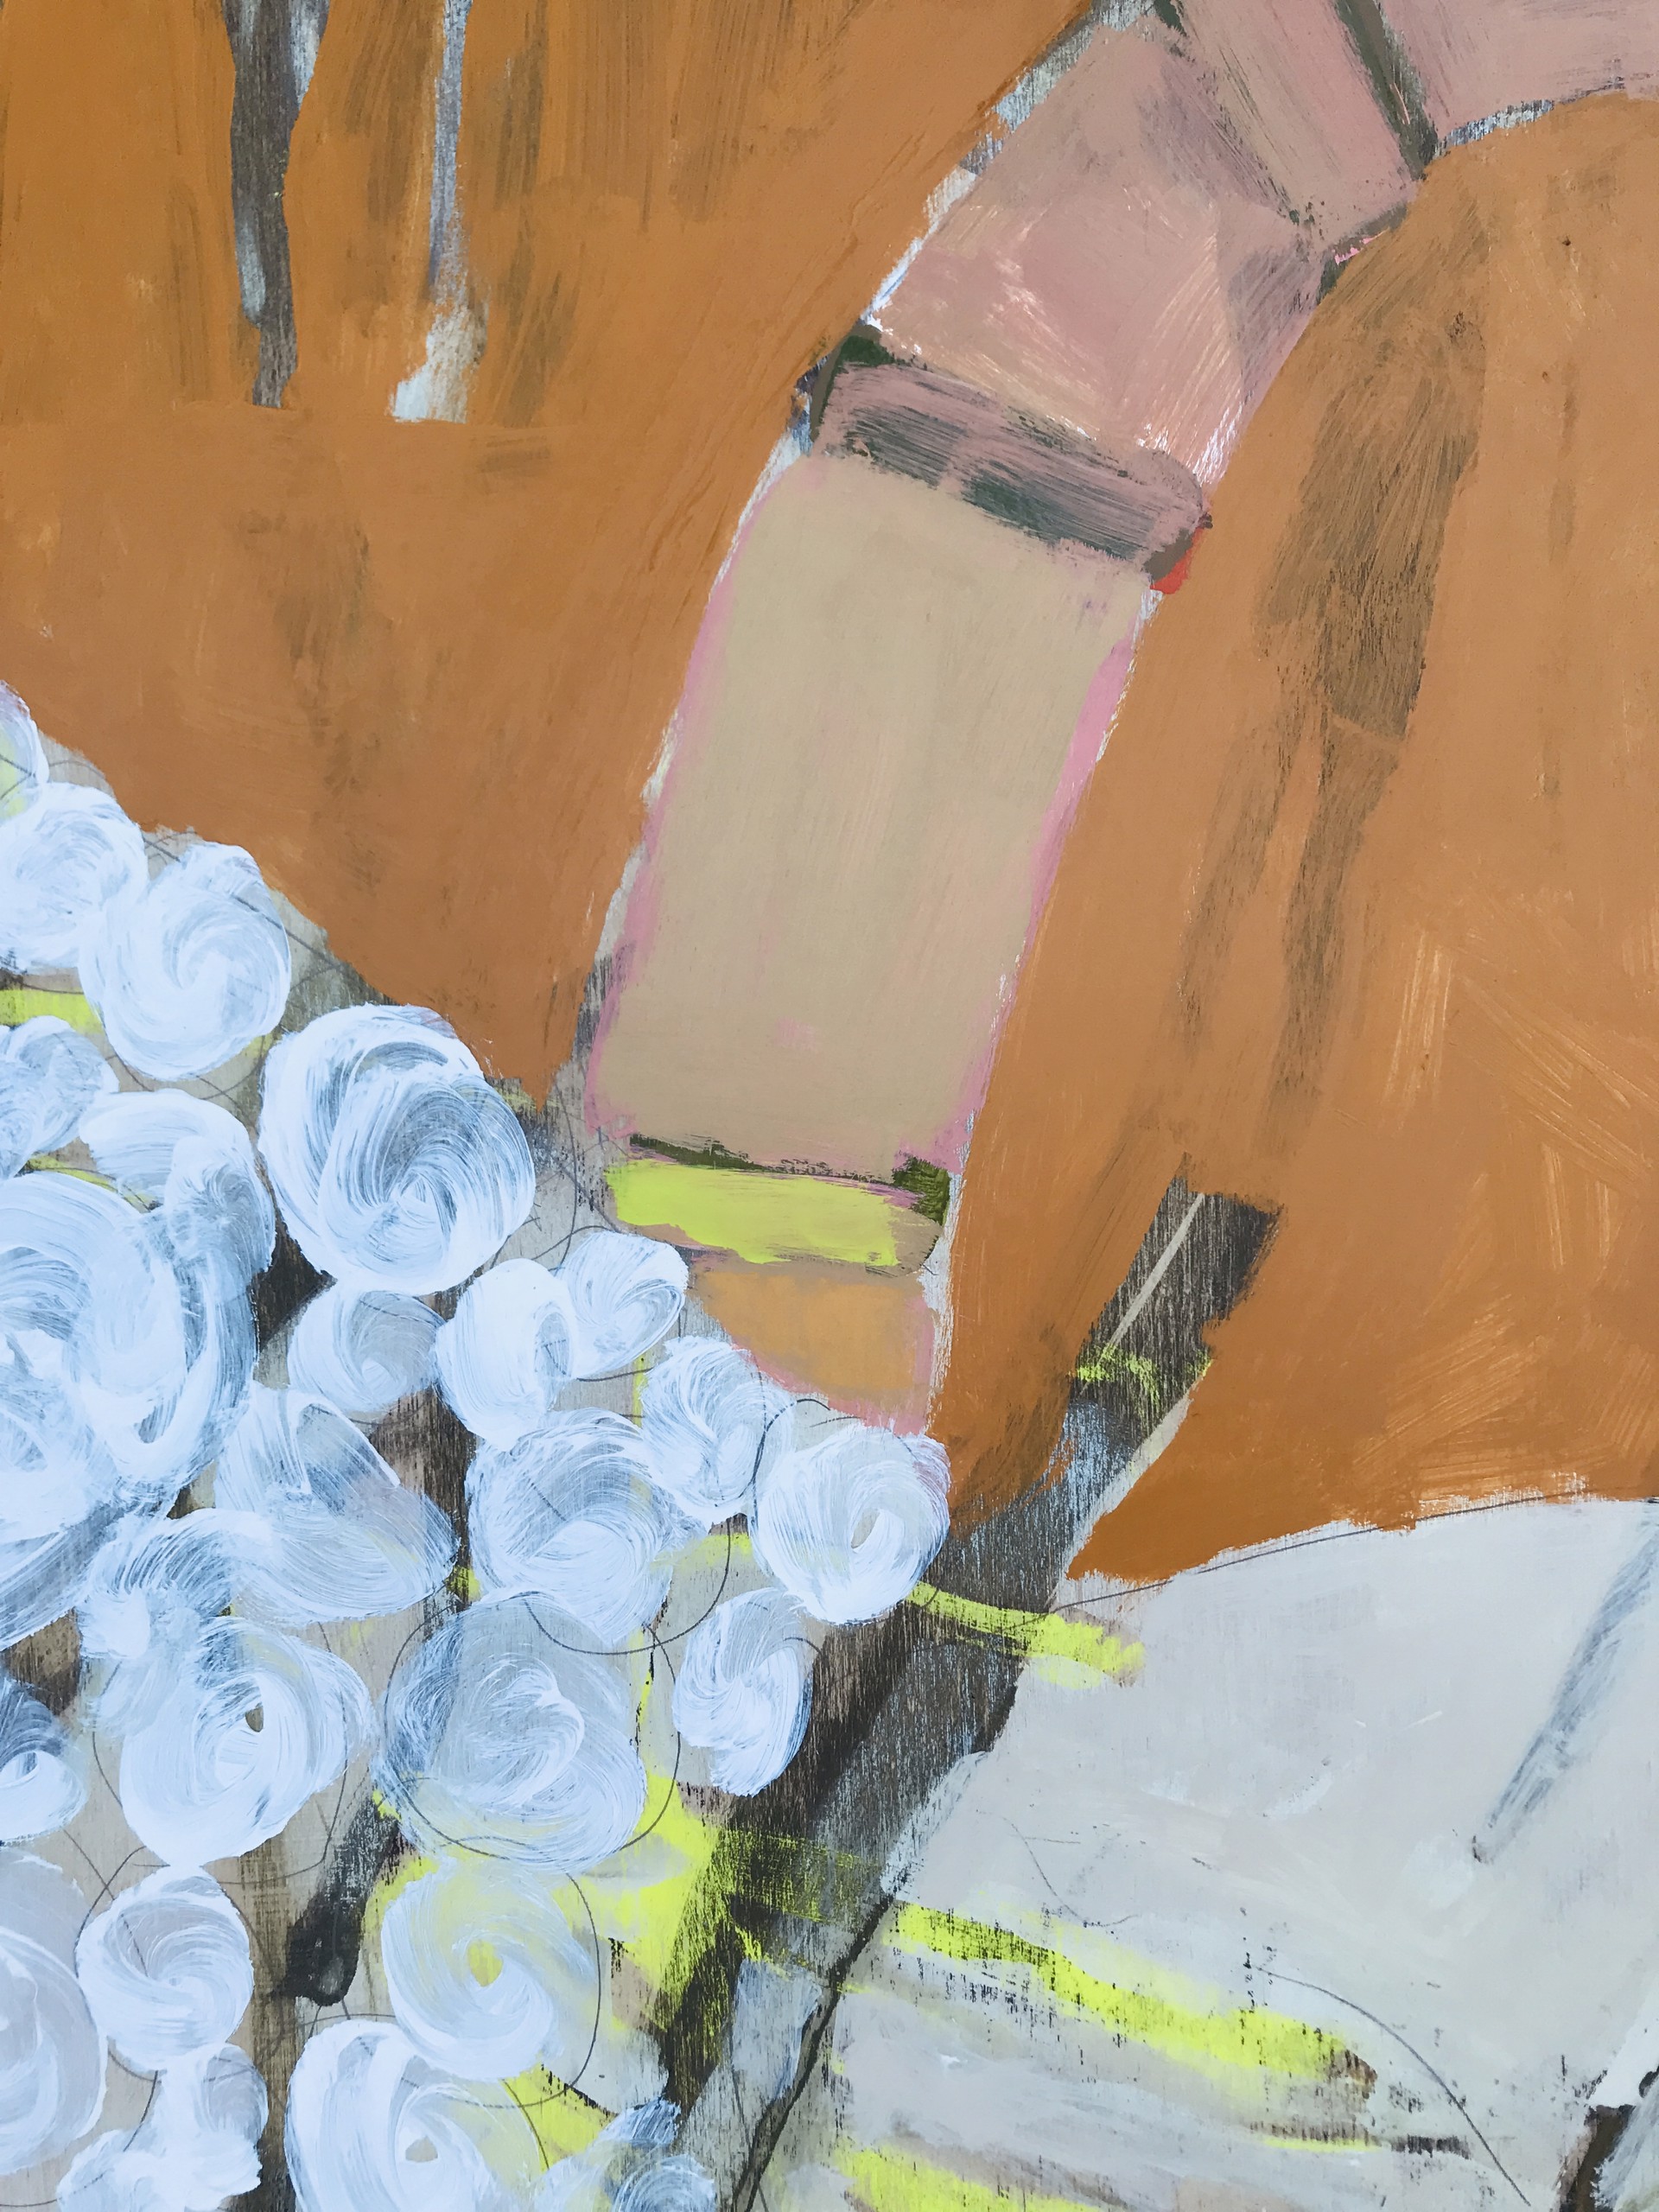 Blanket of White Carnations by Rachael Van Dyke